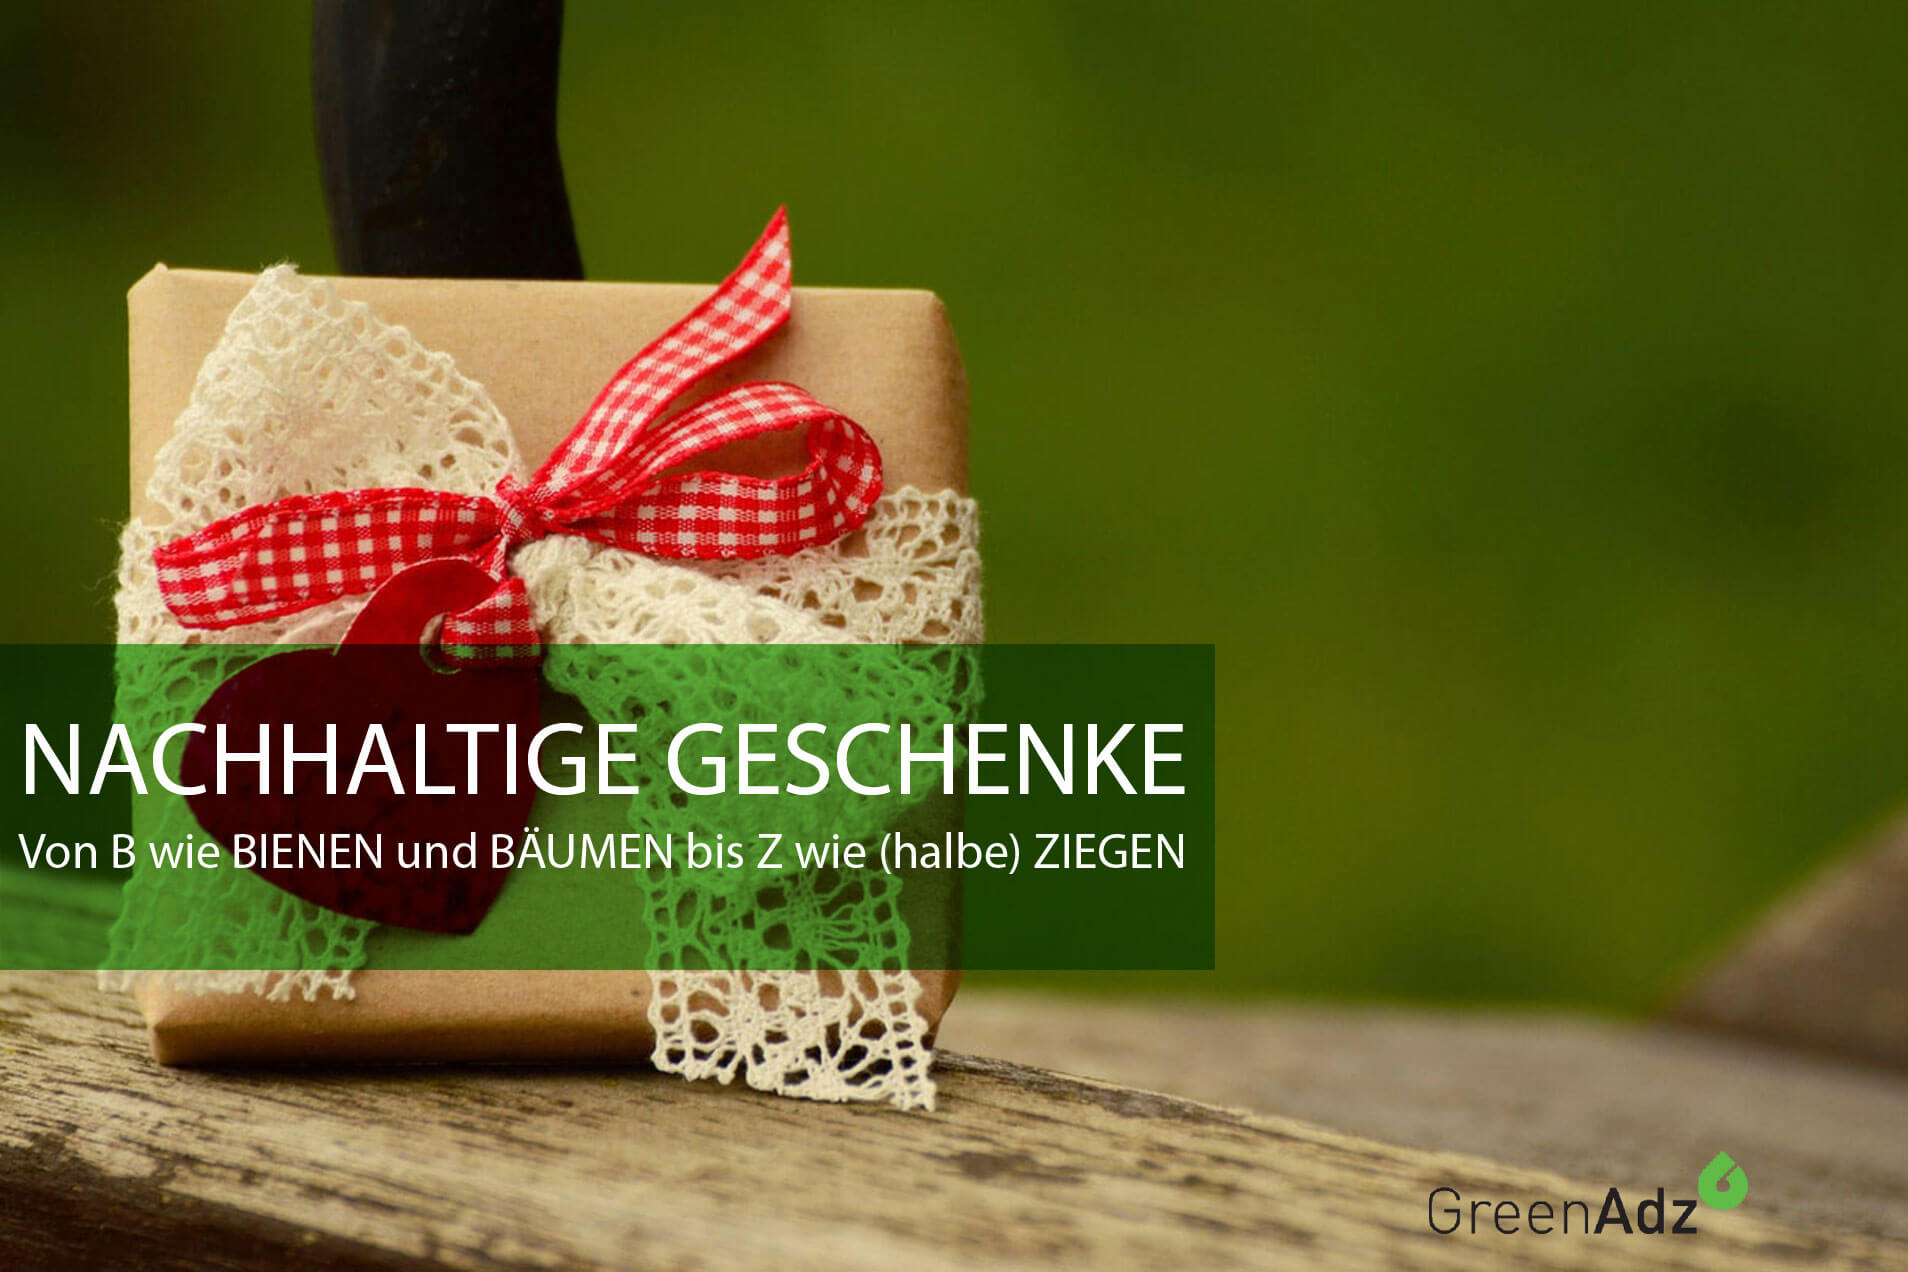 #BaumstattKarte Das CO2-neutrale Weihnachtsgeschenk - ein Baum statt Karte für 1,-€